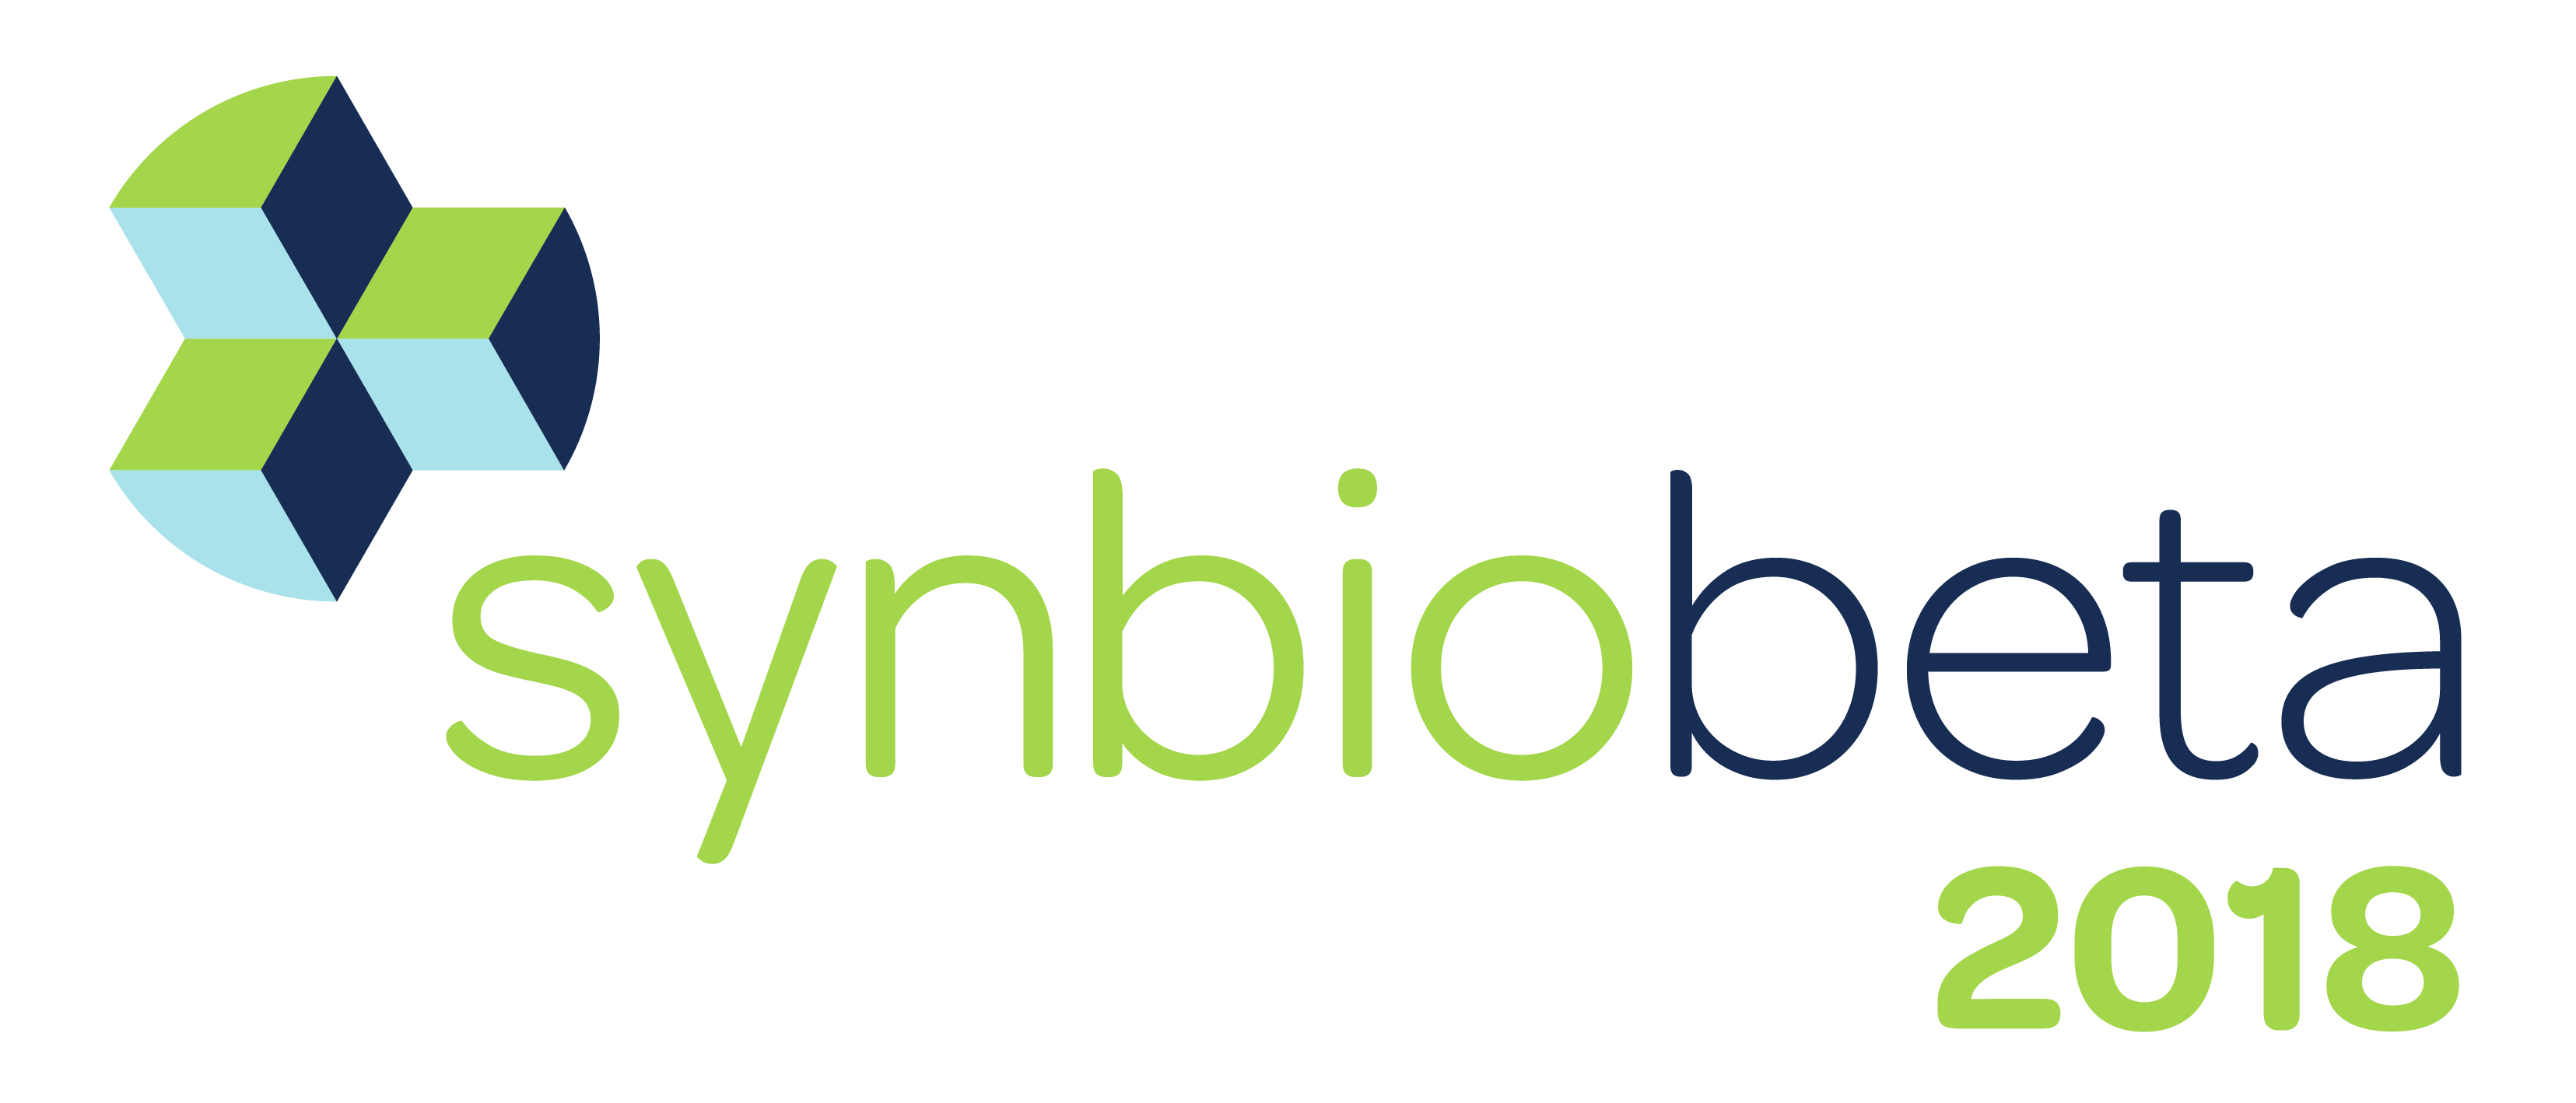 SynBioBeta 2018: The Global Synthetic Biology Summit - SynBioBeta 2018